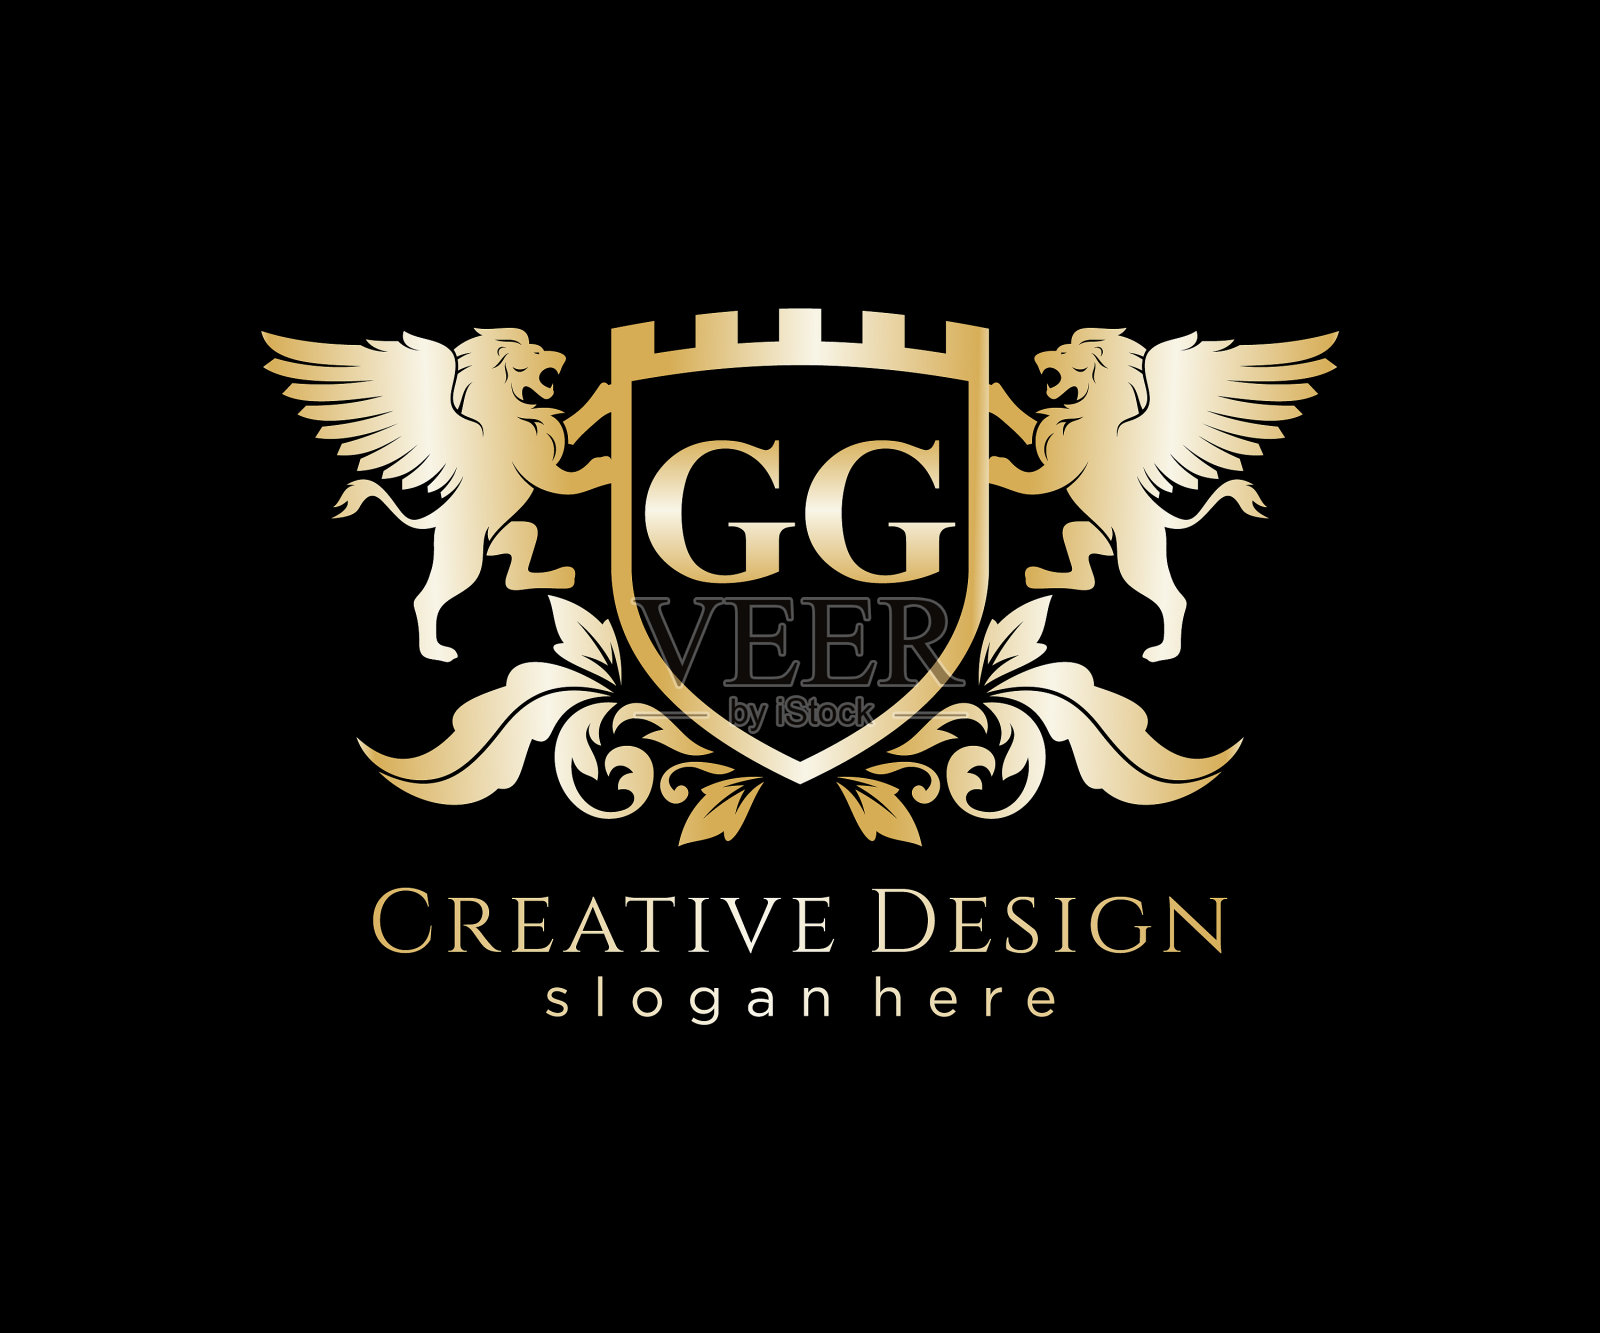 Gg字母首字母与狮子皇家标志模板插画图片素材